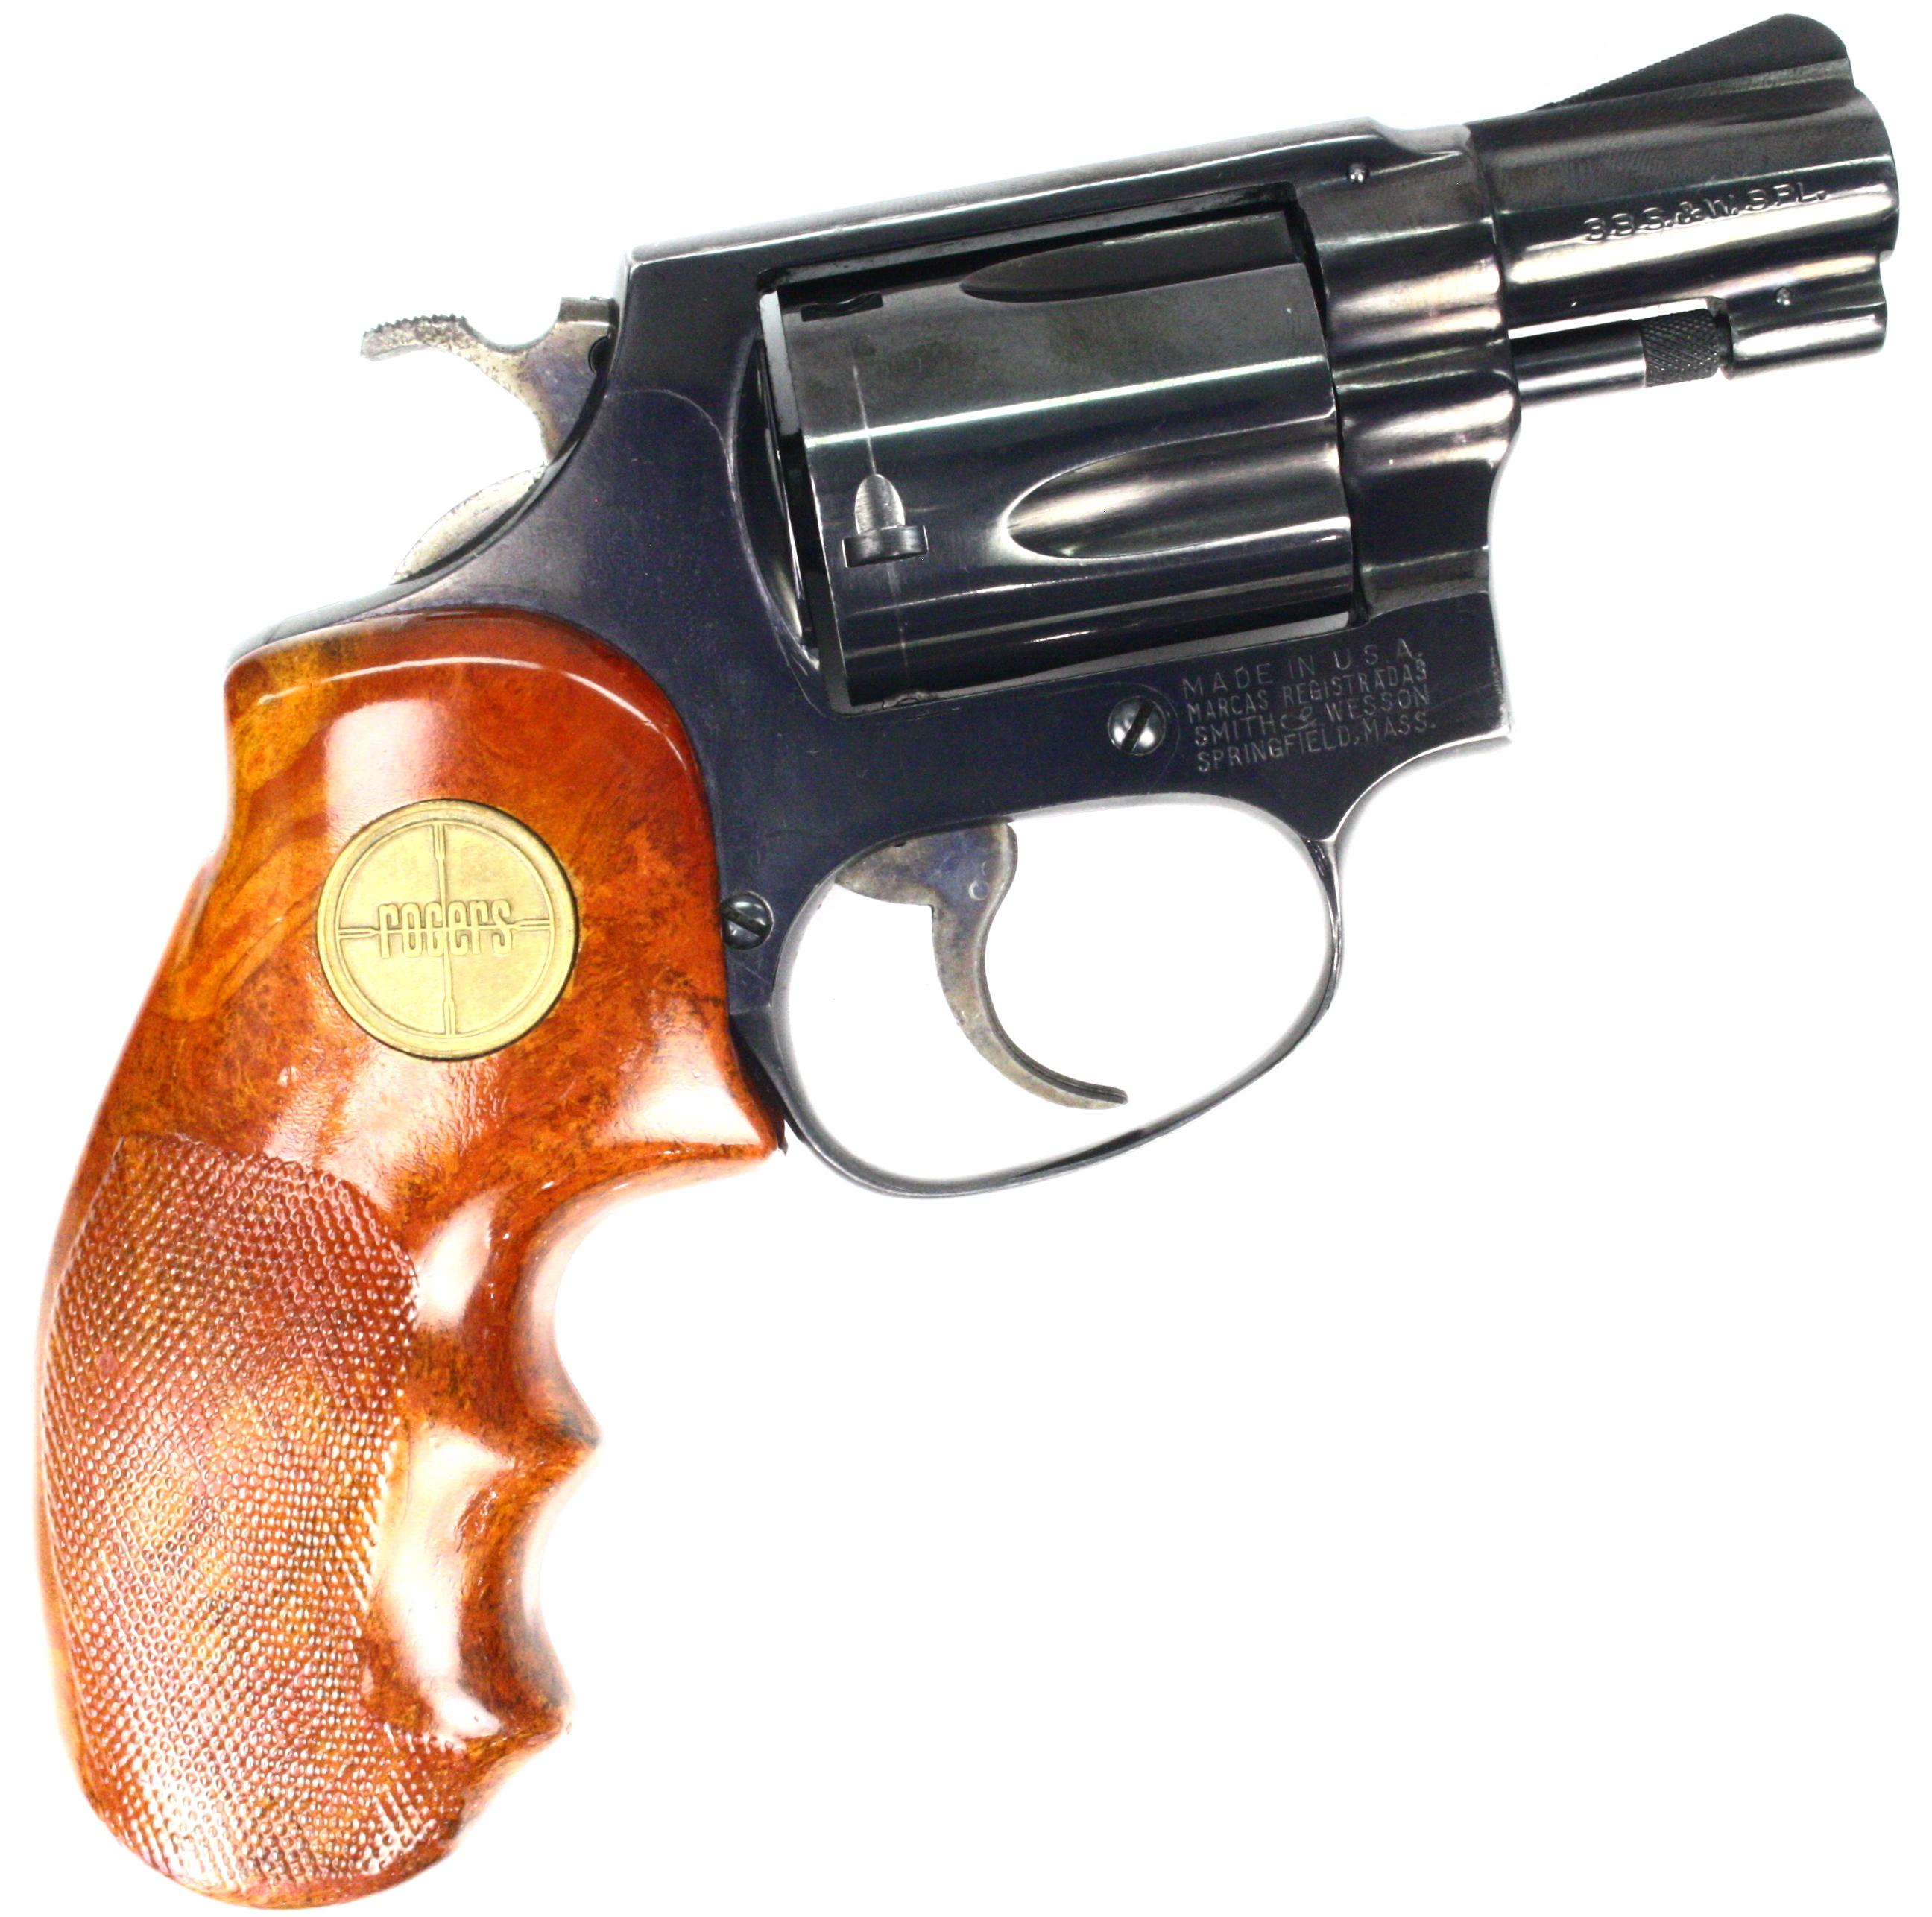 Estate Smith & Wesson model 36 revolver, .38 Spl cal